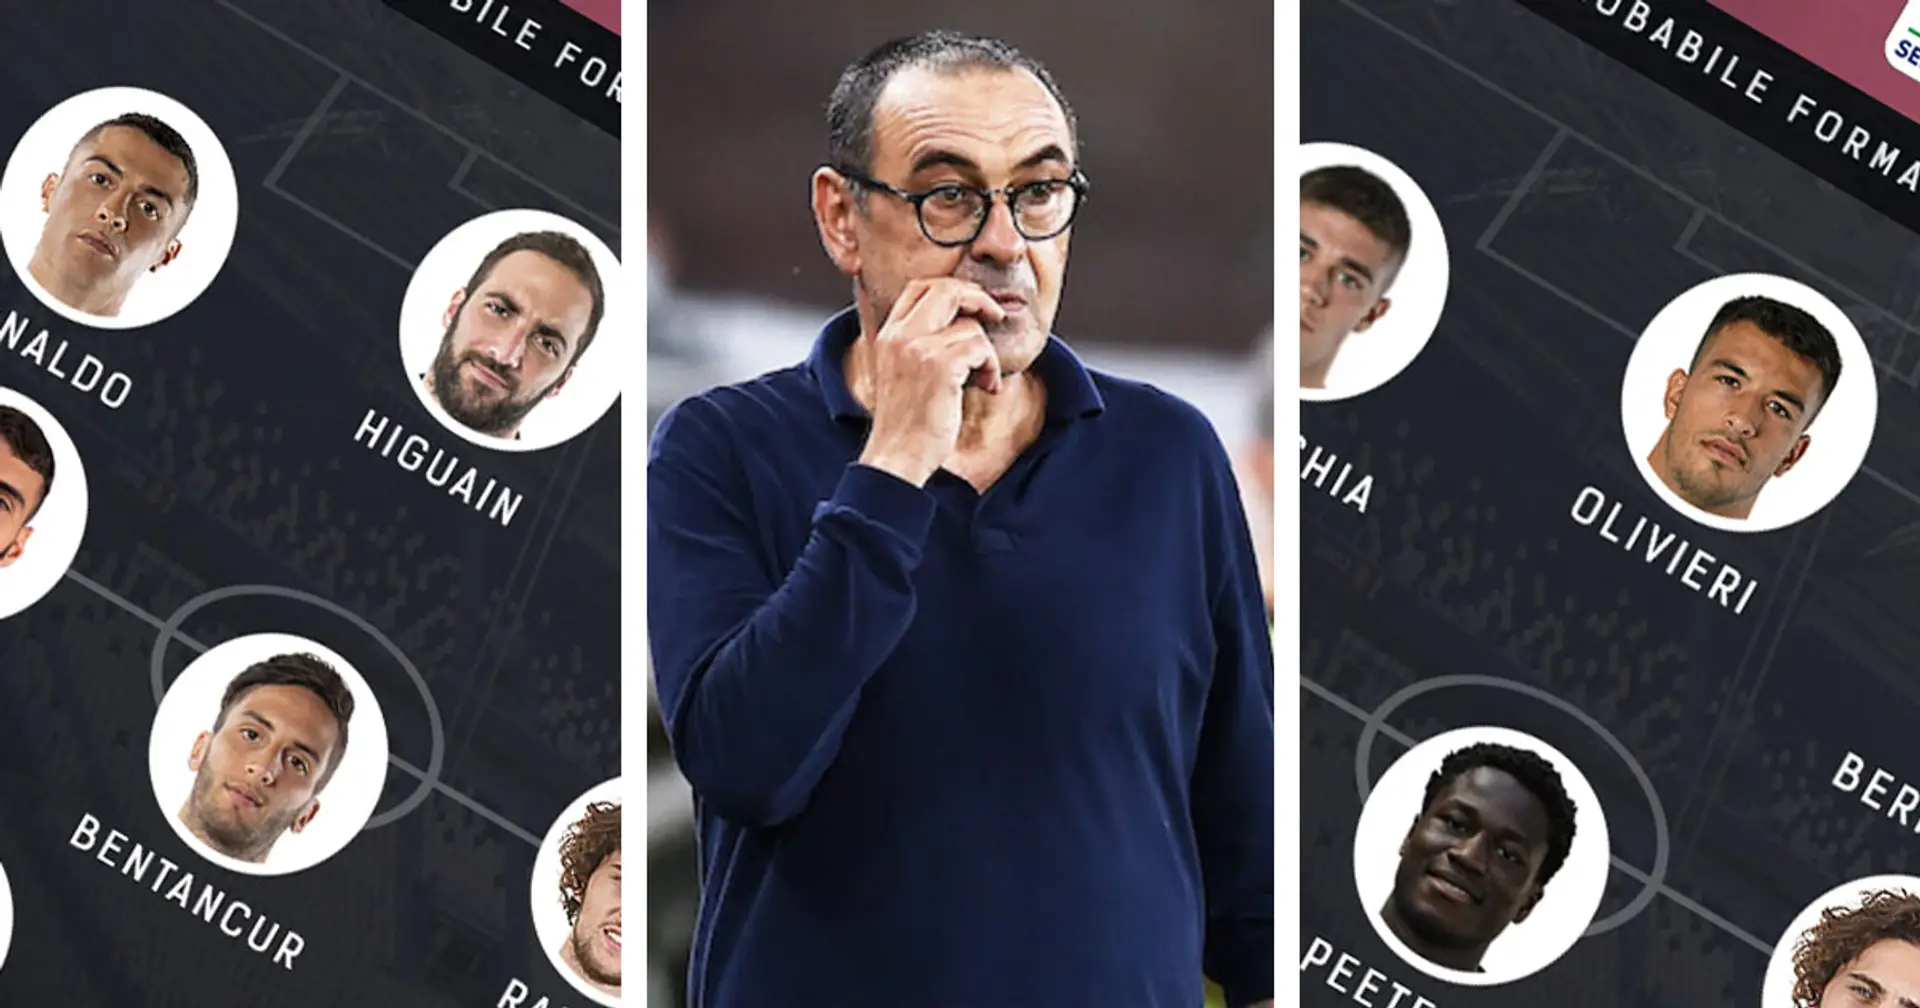 Pinsoglio vs Buffon e Olivieri vs Higuain: scegli il tuo XI ideale per la sfida contro la Roma tra queste 3 opzioni